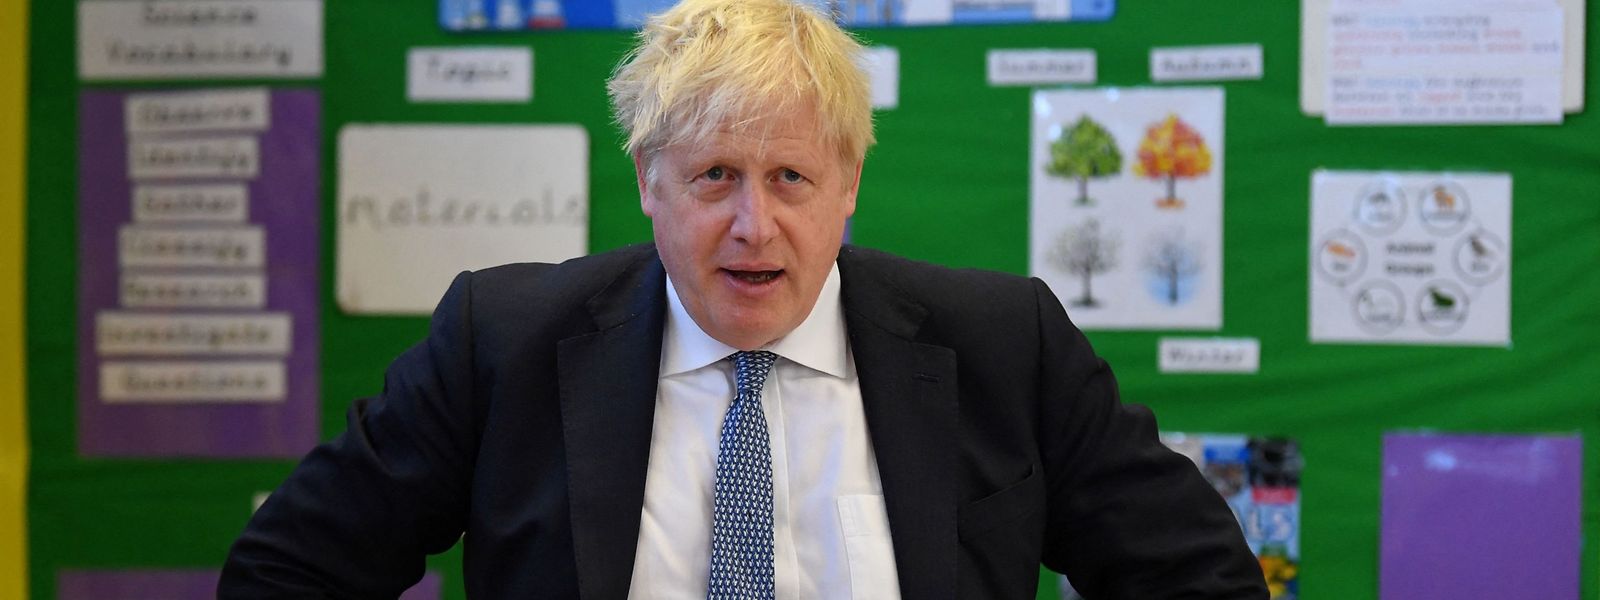 Le parti conservateur du Premier ministre Boris Johnson a perdu le contrôle de conseils clés à Londres, selon les résultats partiels des élections locales et régionales britanniques du 6 mai 2022